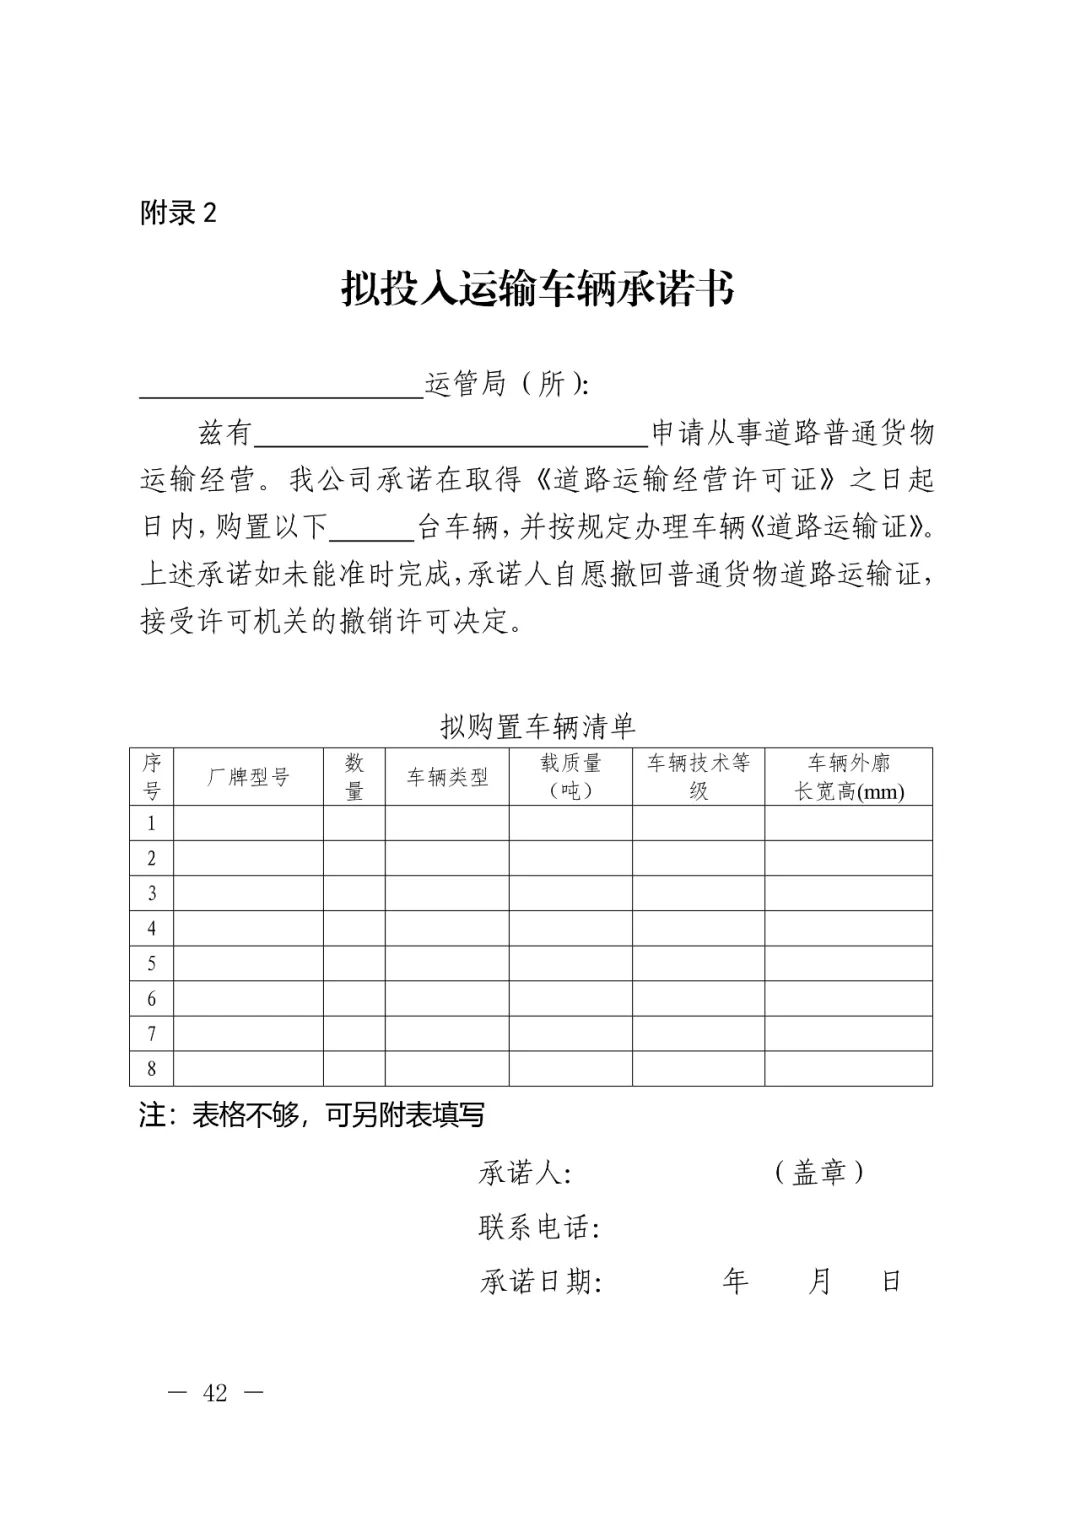 【浙江】关于开展网络平台道路货物运输经营管理工作的通知(图42)